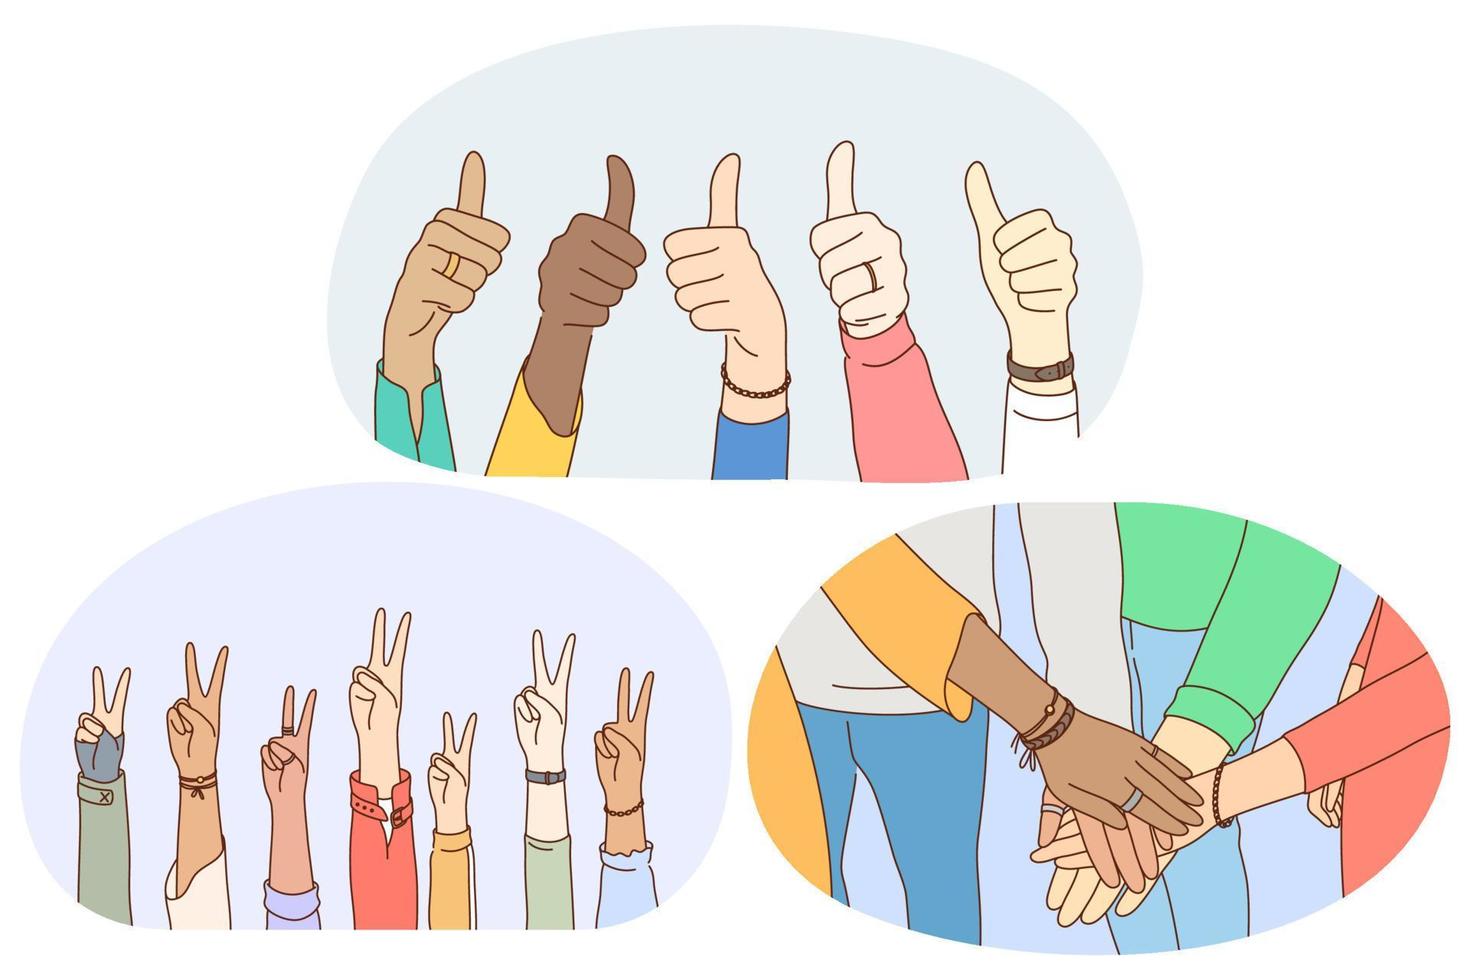 langage des signes et des gestes, concept d'expression des émotions des mains. mains de personnes de race mixte montrant le signe du pouce vers le haut, signe des doigts de la paix et faisant un tas de mains montrant le travail d'équipe et le soutien mutuel vecteur